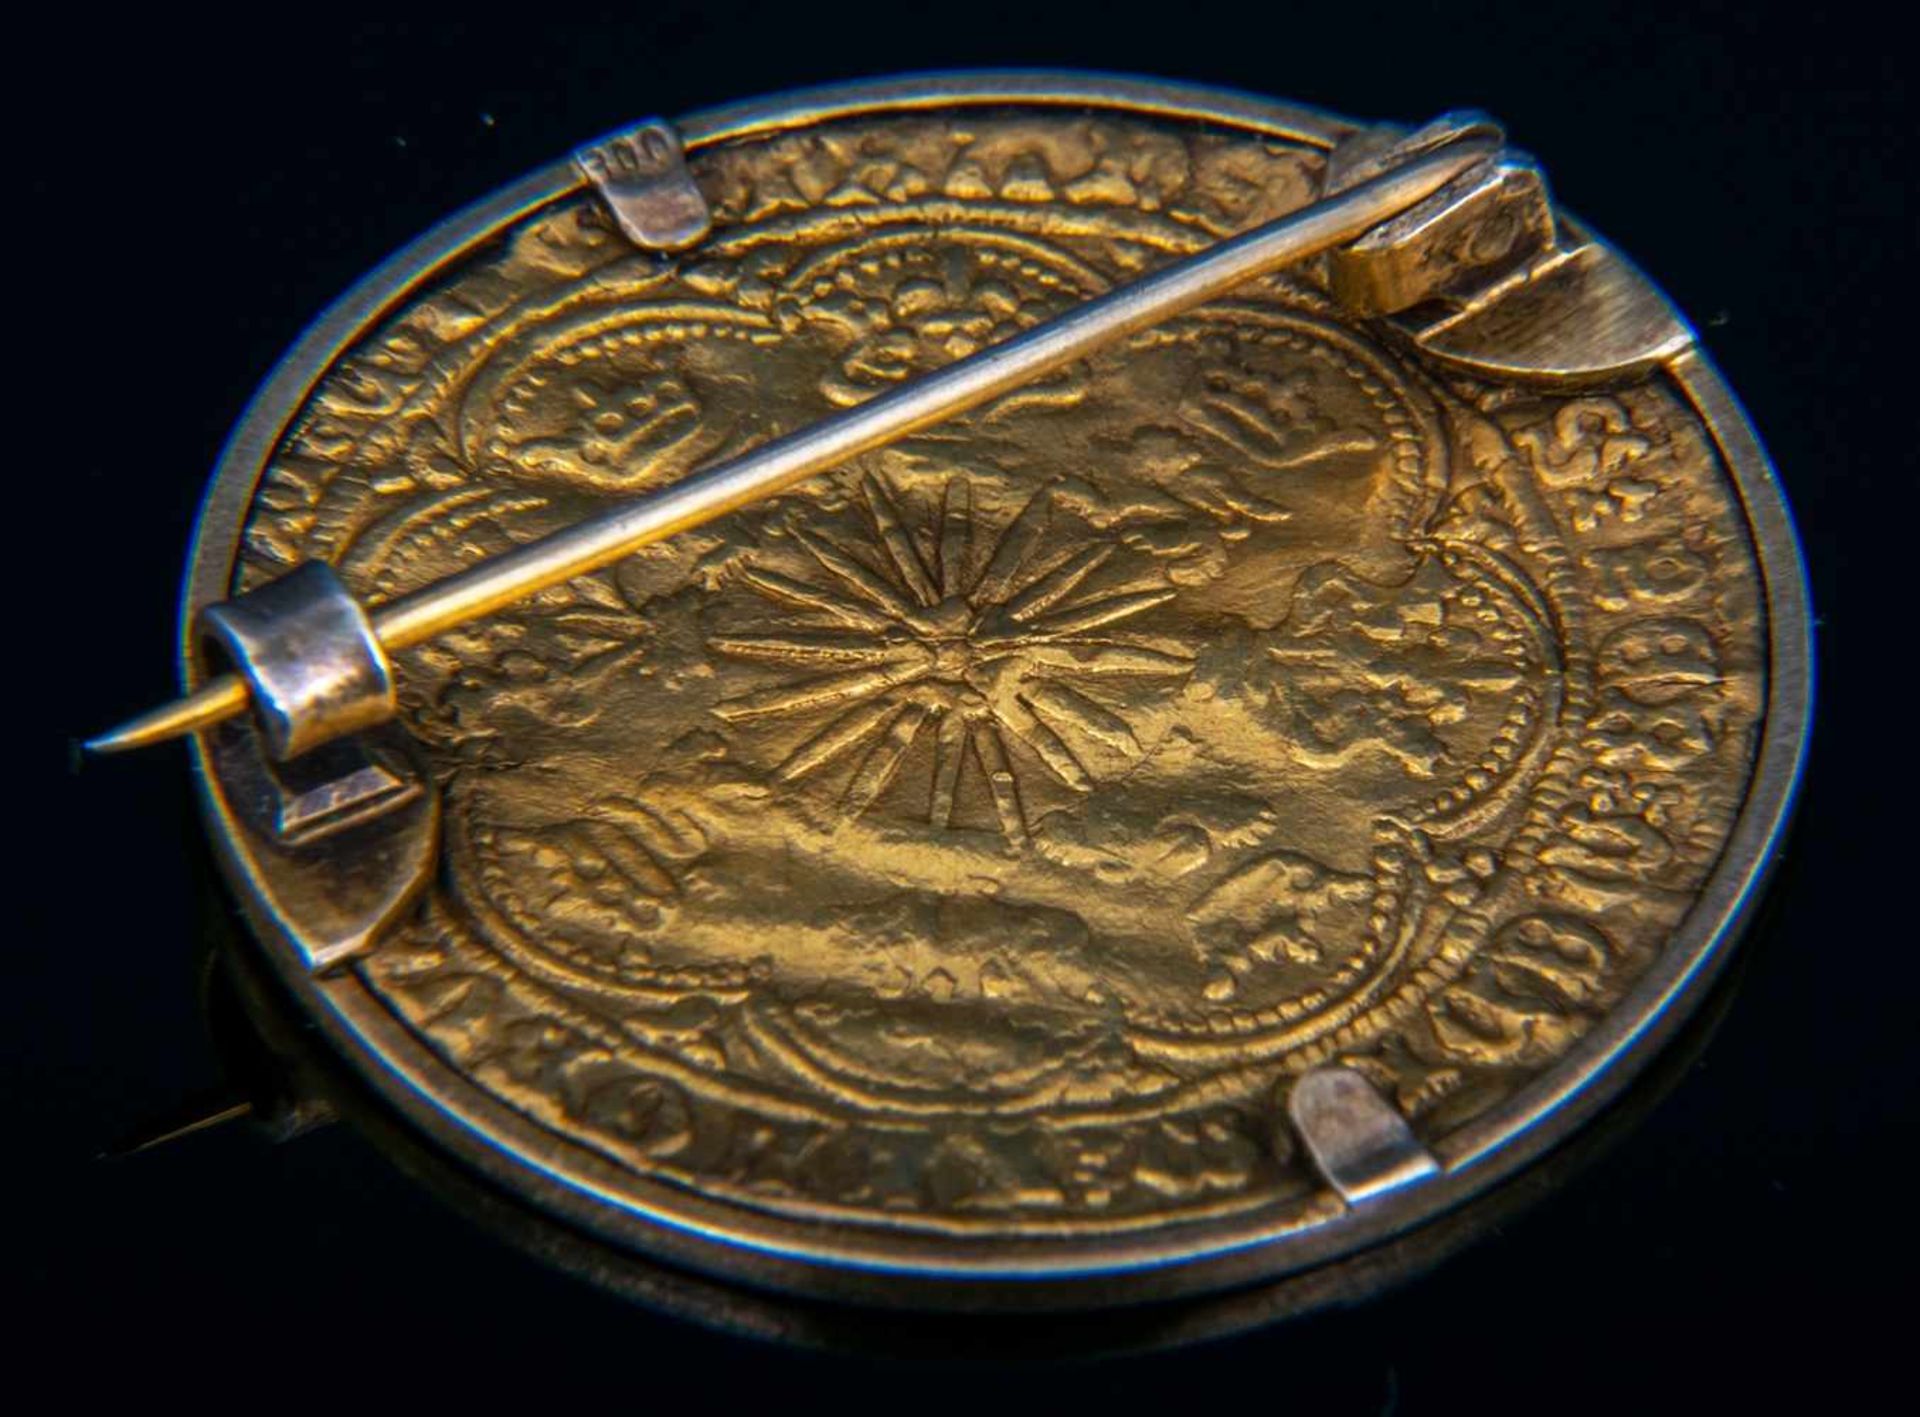 GOLD RYAL / ROSE NOBLE - Goldmünze. England 15. - 17. Jhd., vorderseitig König mit Schwert, Schild & - Bild 8 aus 15